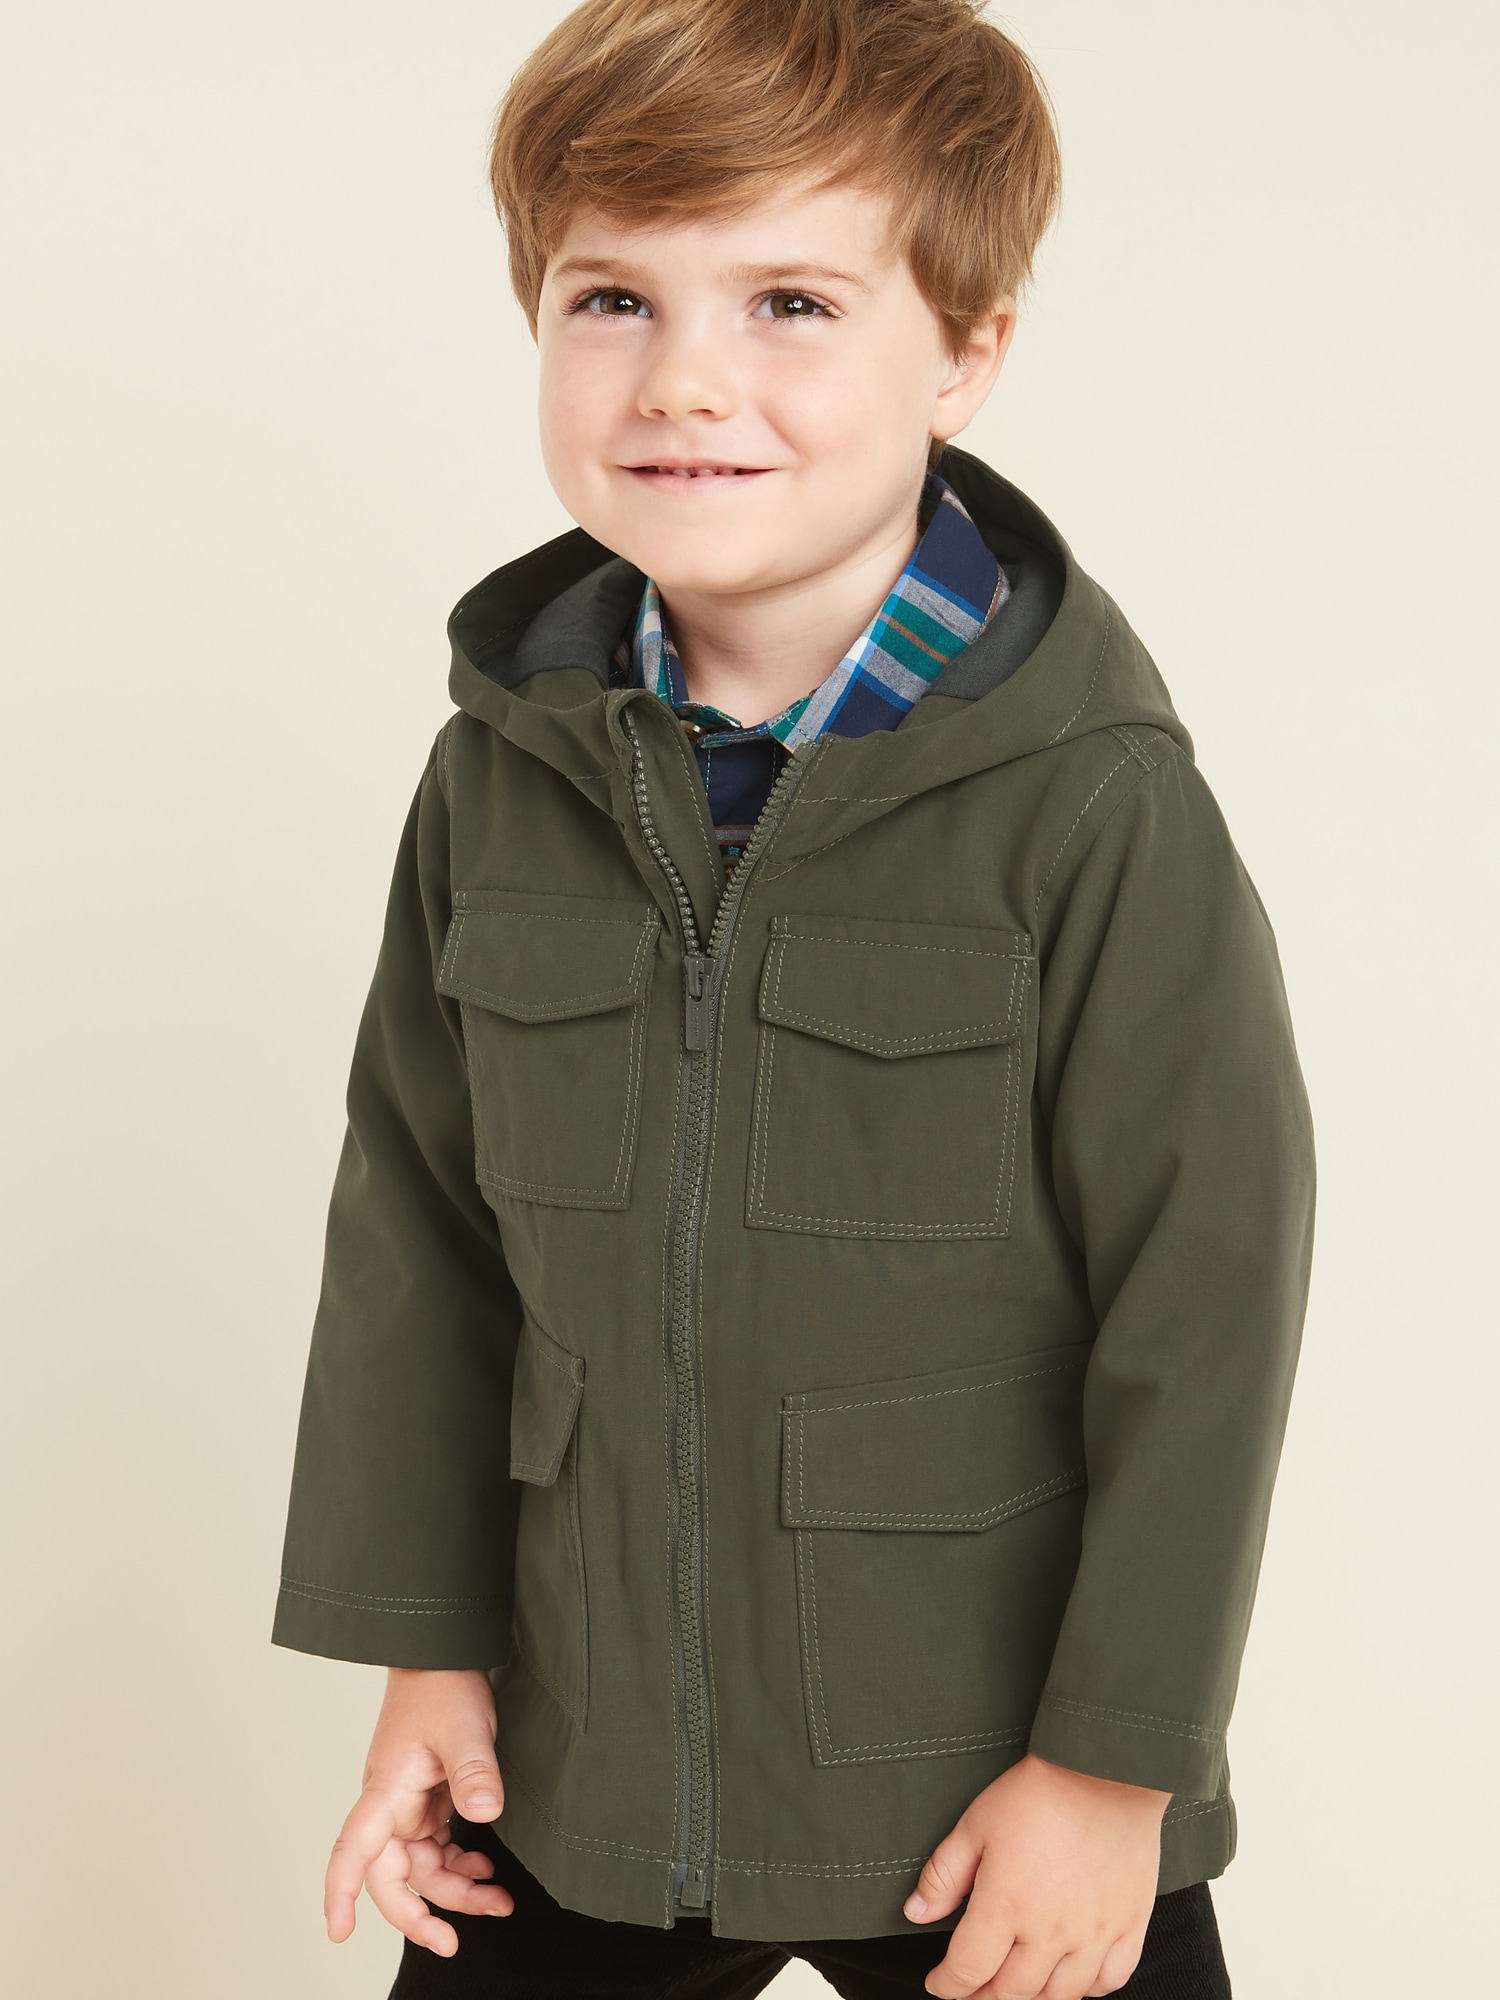 gap jacket toddler boy